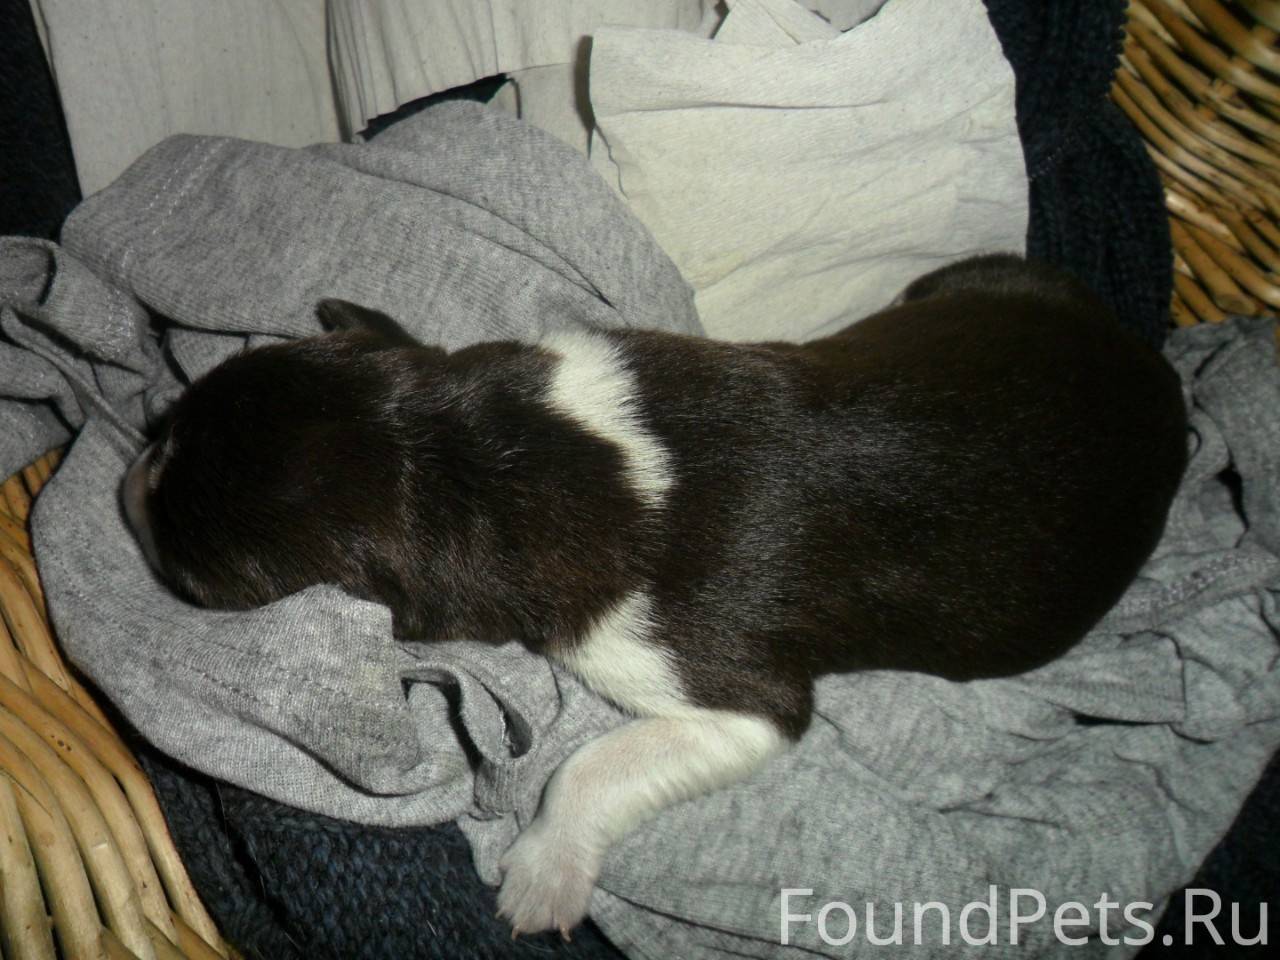 Новорожденный щенок упал с дивана